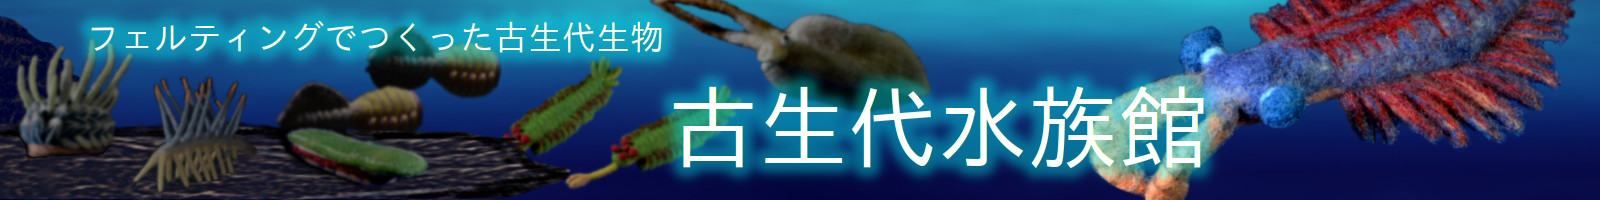 paleozoic aquarium banner